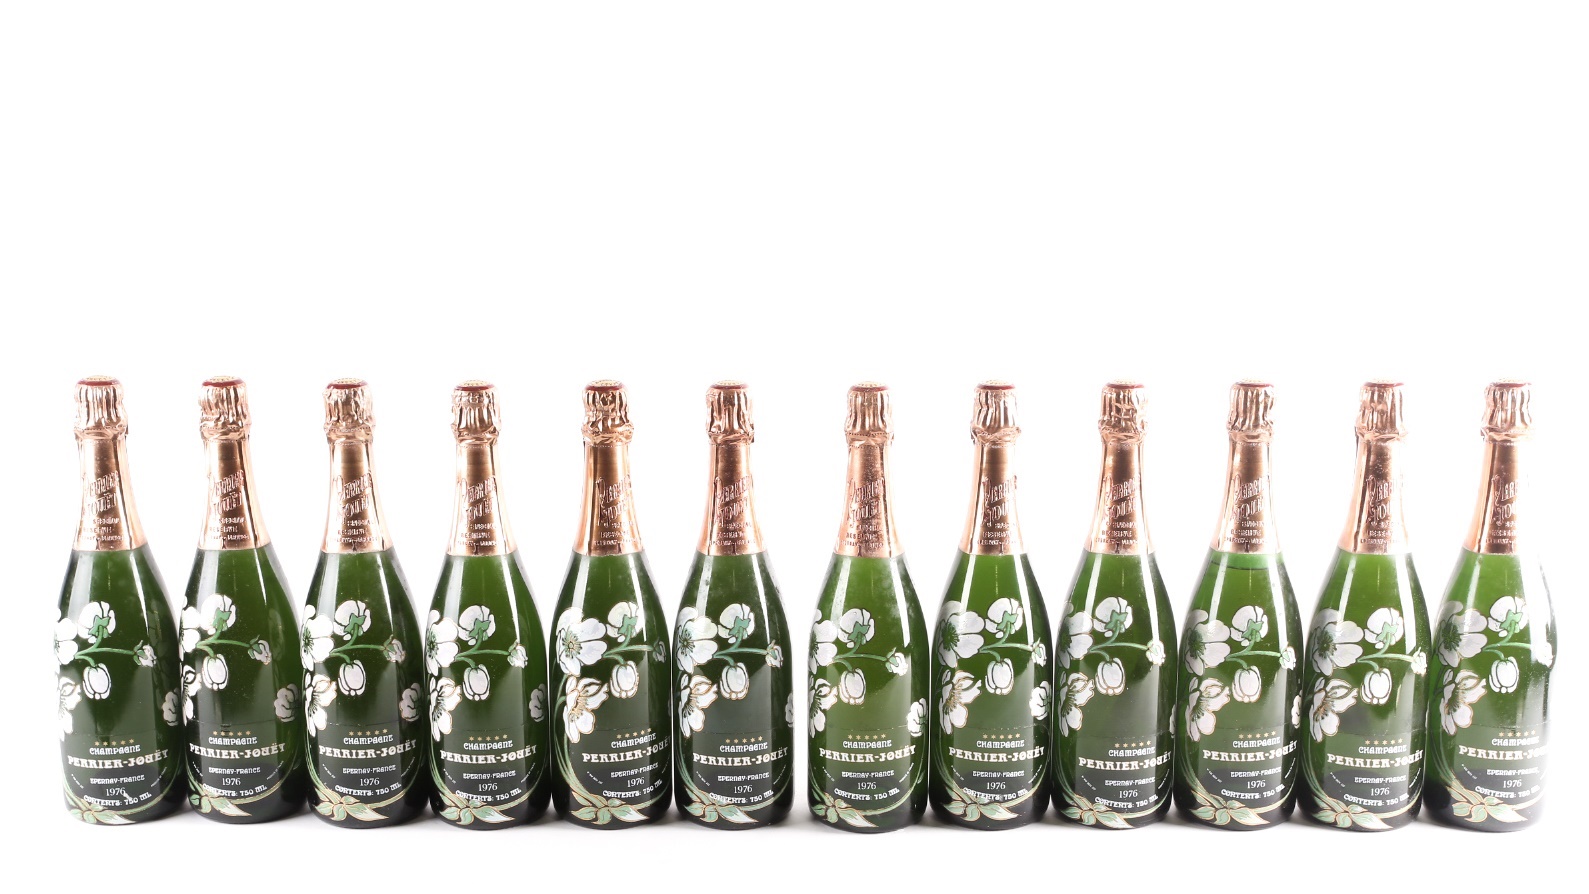 Twelve bottles of 1976 Perrier-Jouet Champagne